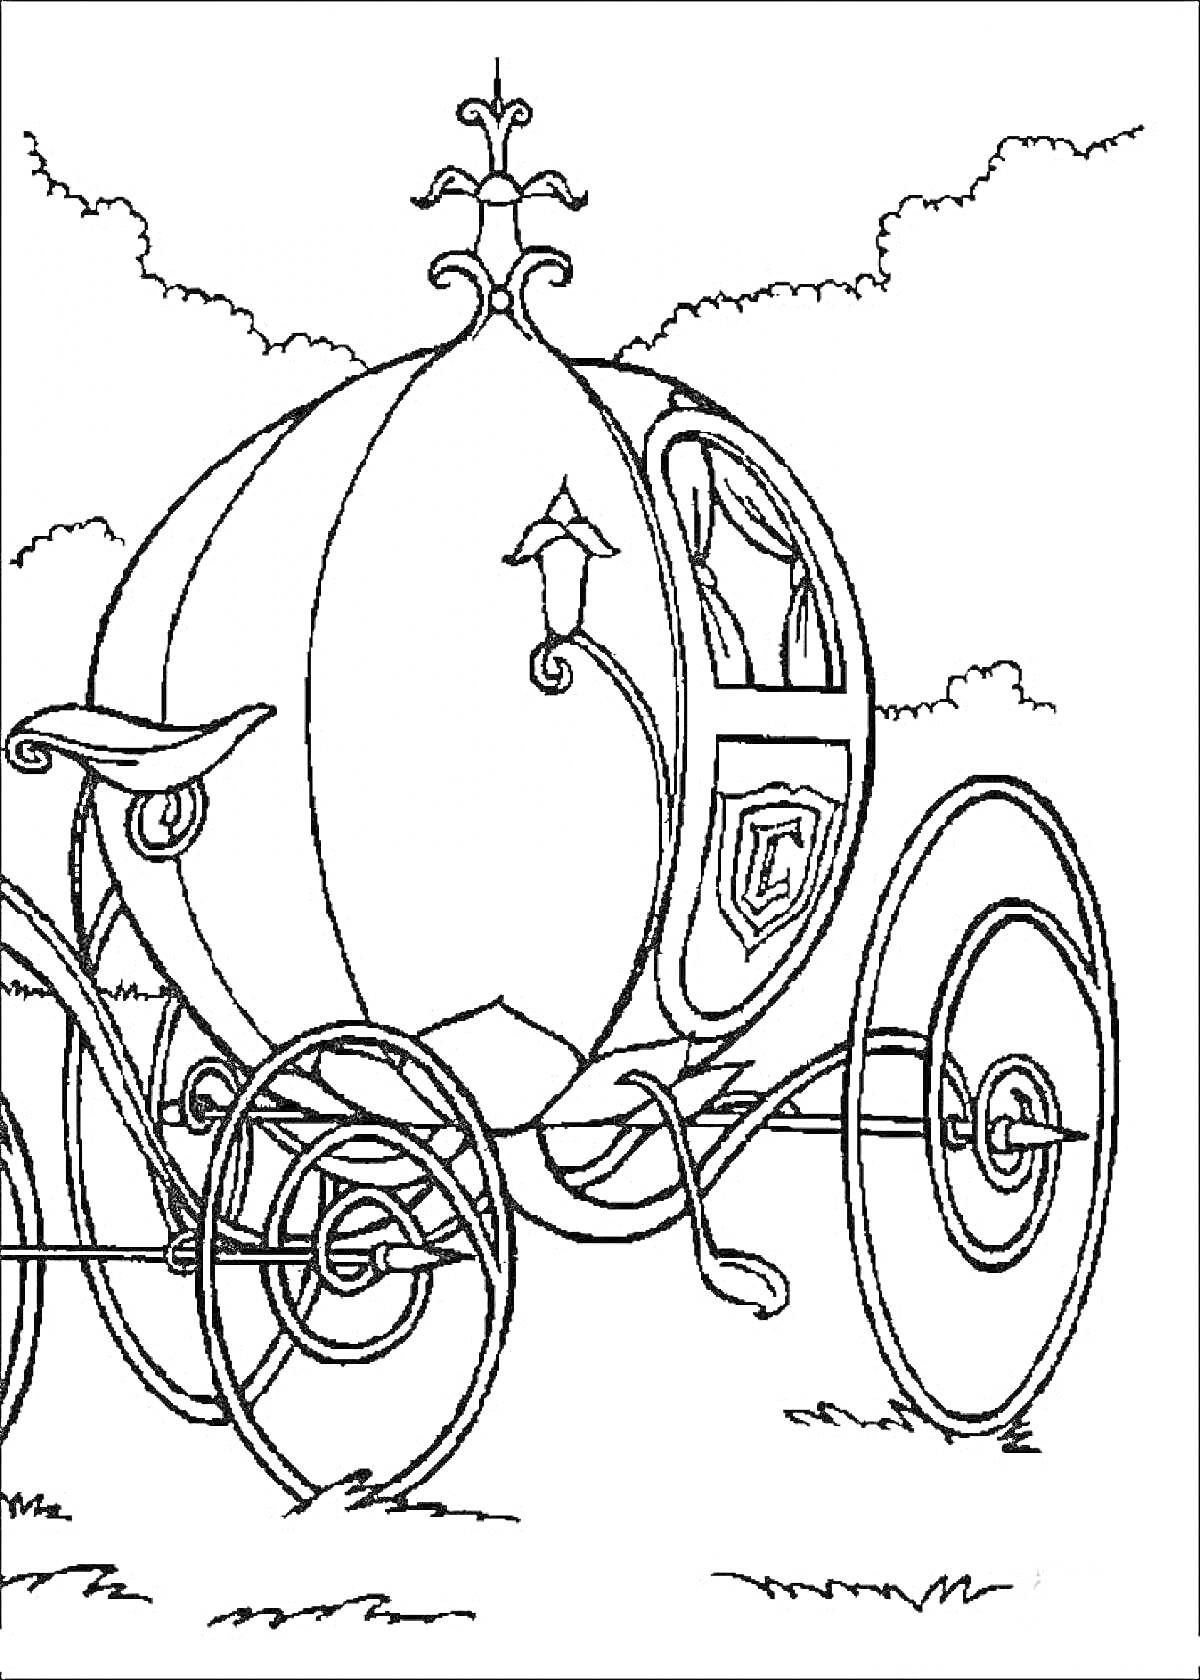  Карета в форме тыквы с фонарем, колёсами и декоративными элементами, на фоне облаков и травы